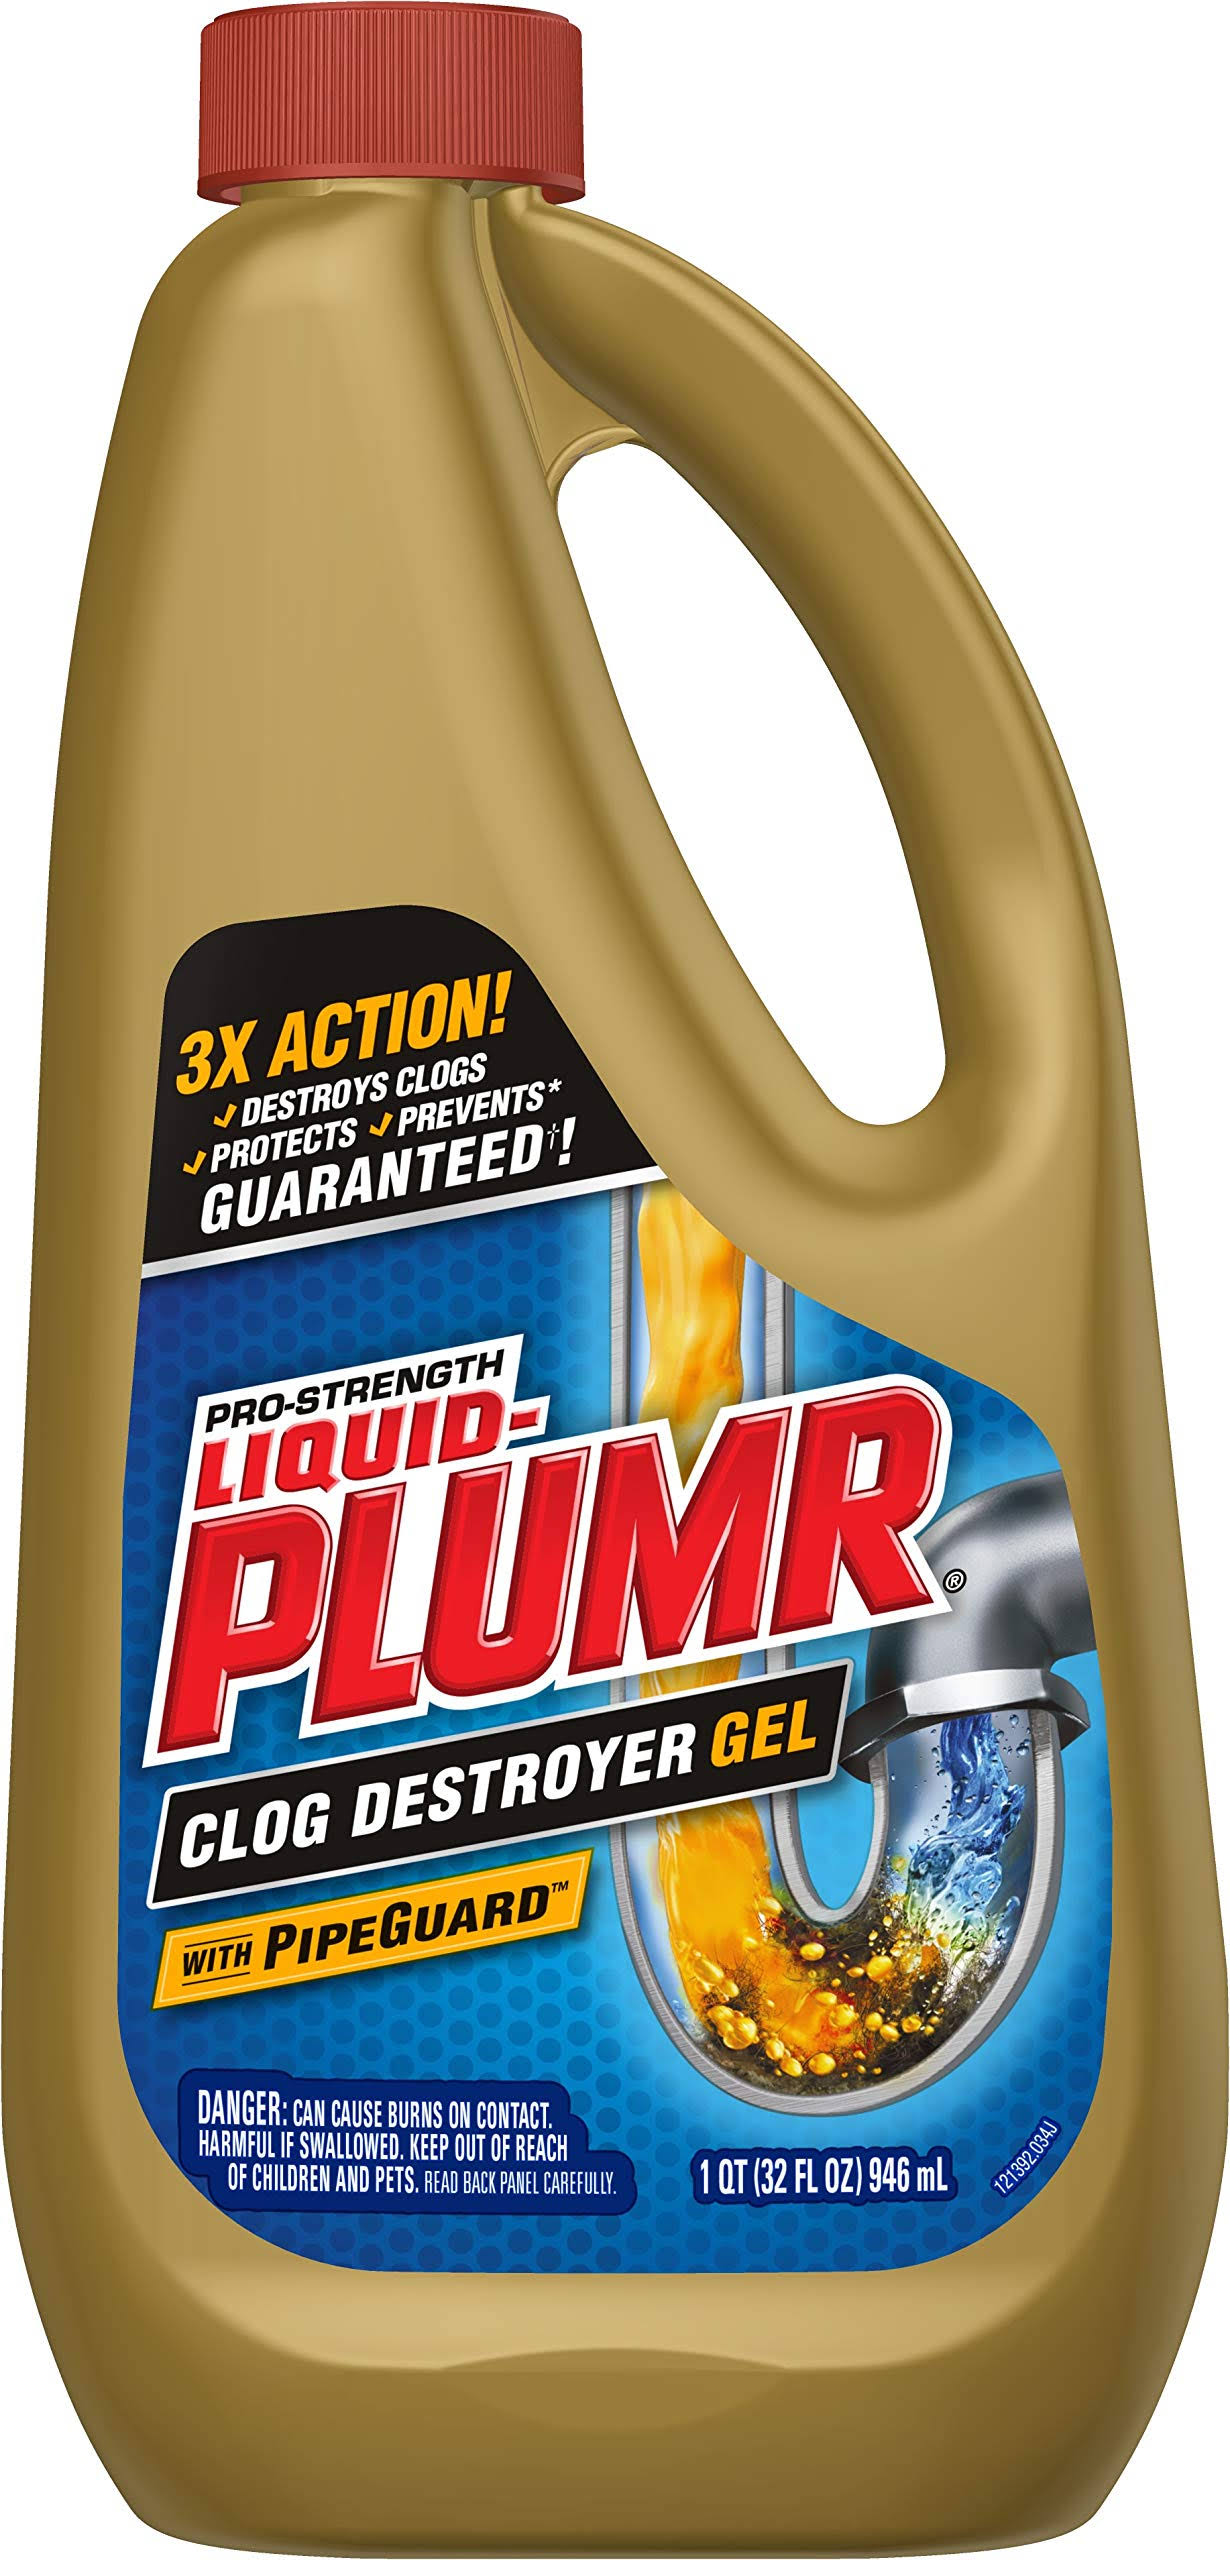 Clorox Liquid-Plumr Pro-Strength Full Clog Destroyer Clog Remover - 1qt